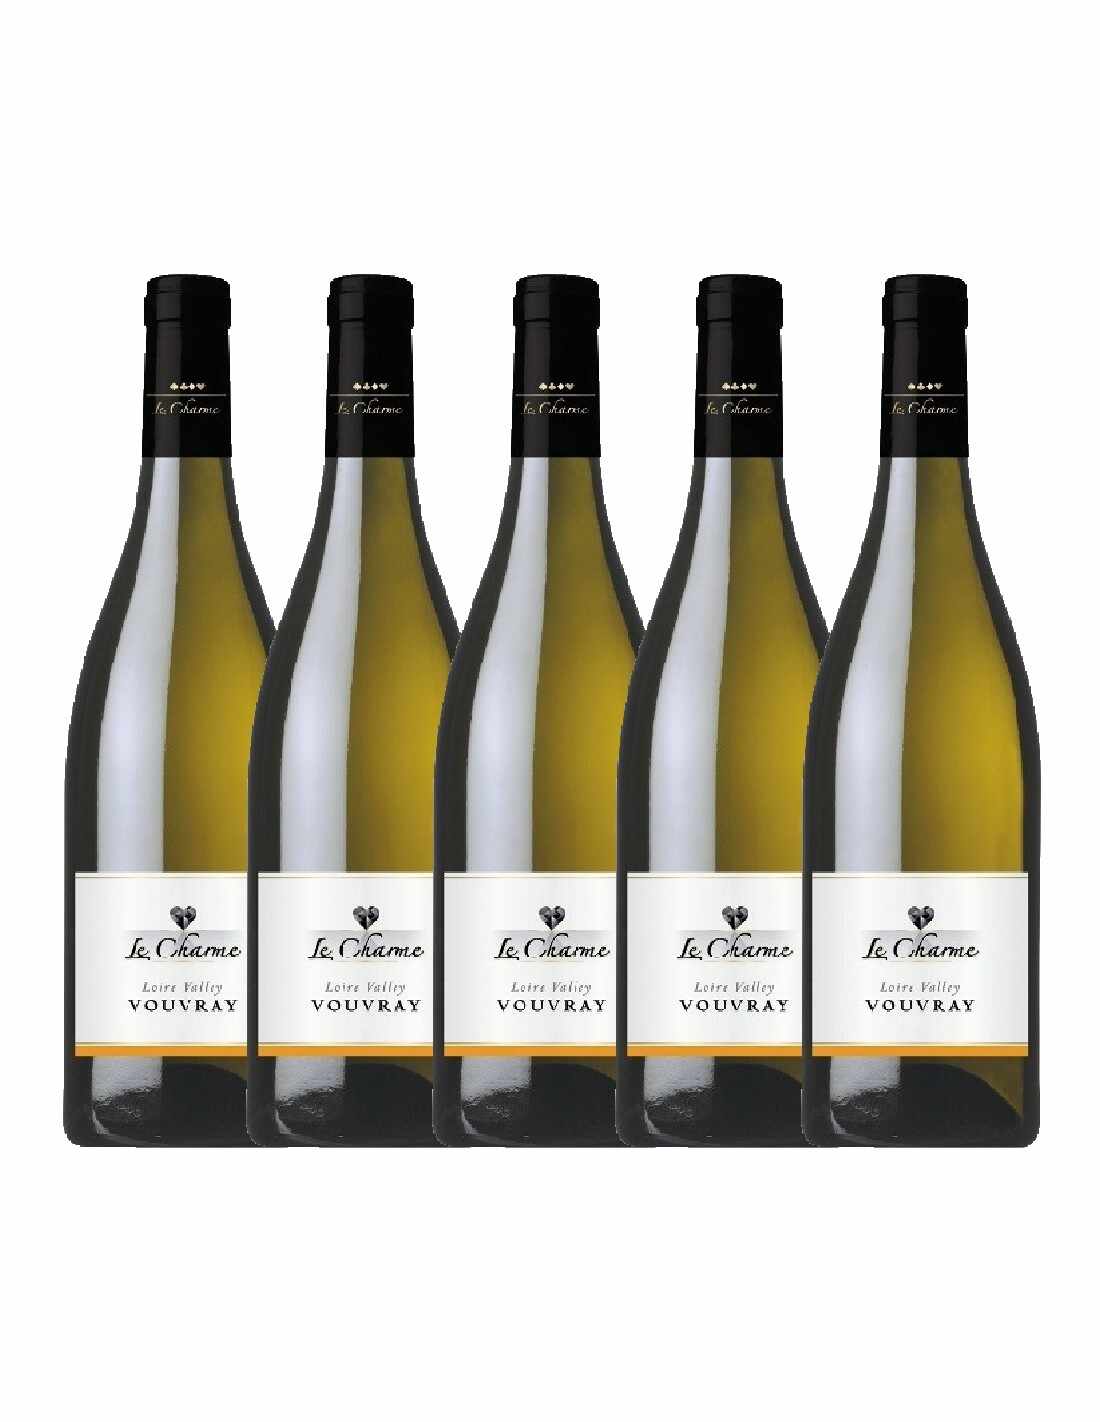 Pachet 5 sticle Vin alb sec, Le Charme Vouvray, 0.75L, 11.5% alc., Franta